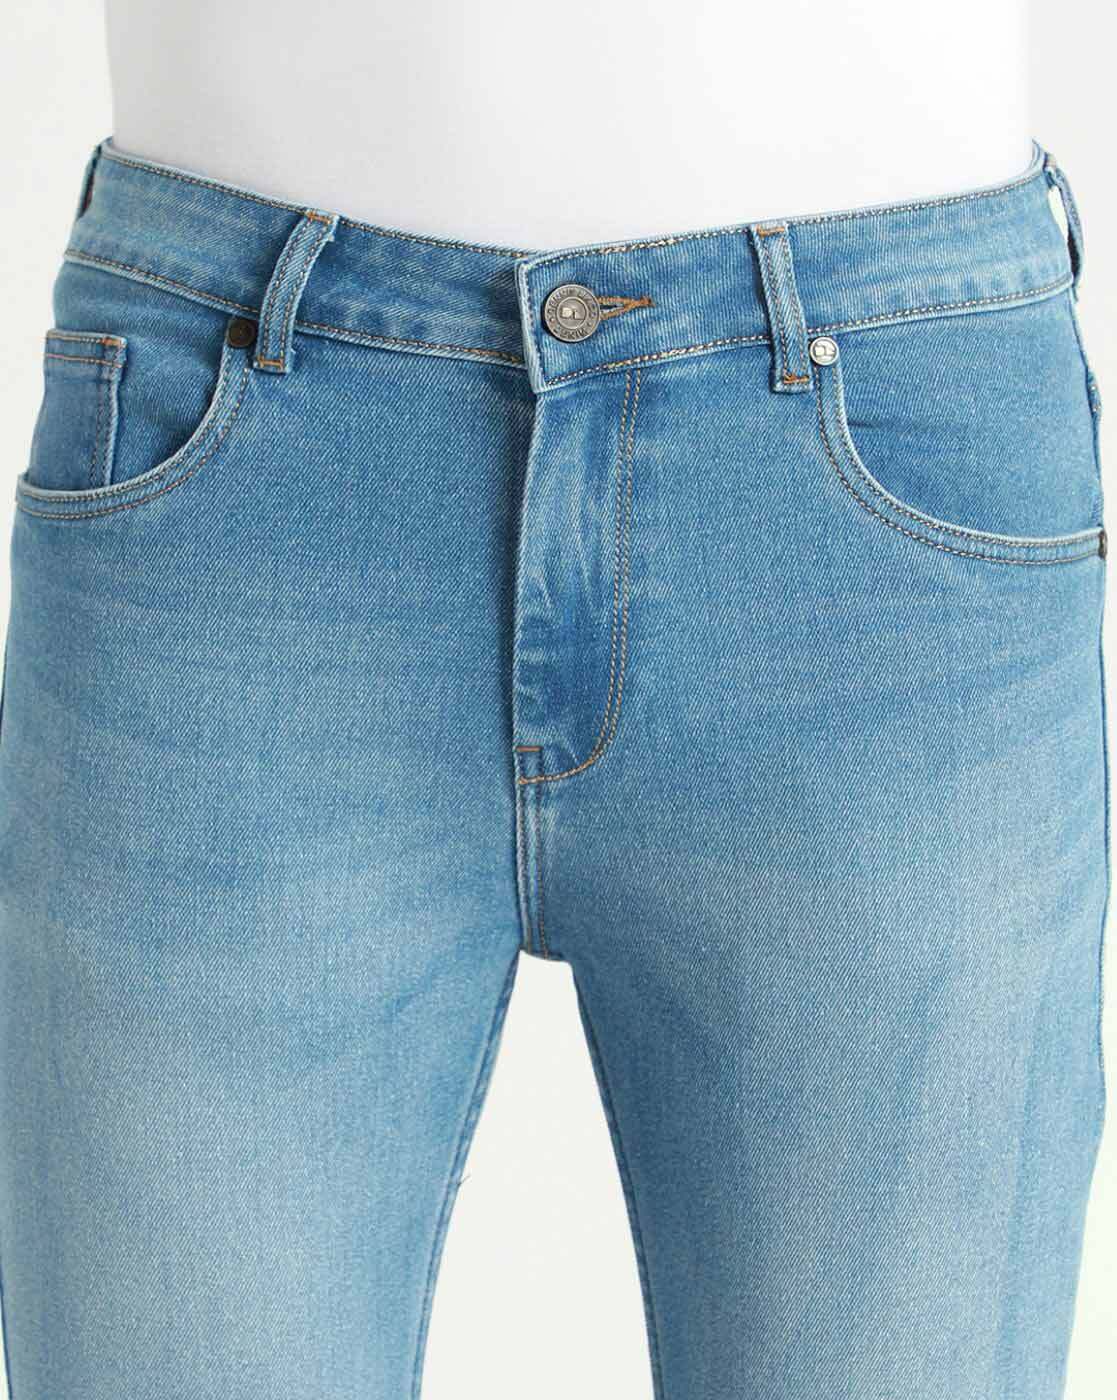 Buy Blue Jeans for Men by DENNISLINGO PREMIUM ATTIRE Online